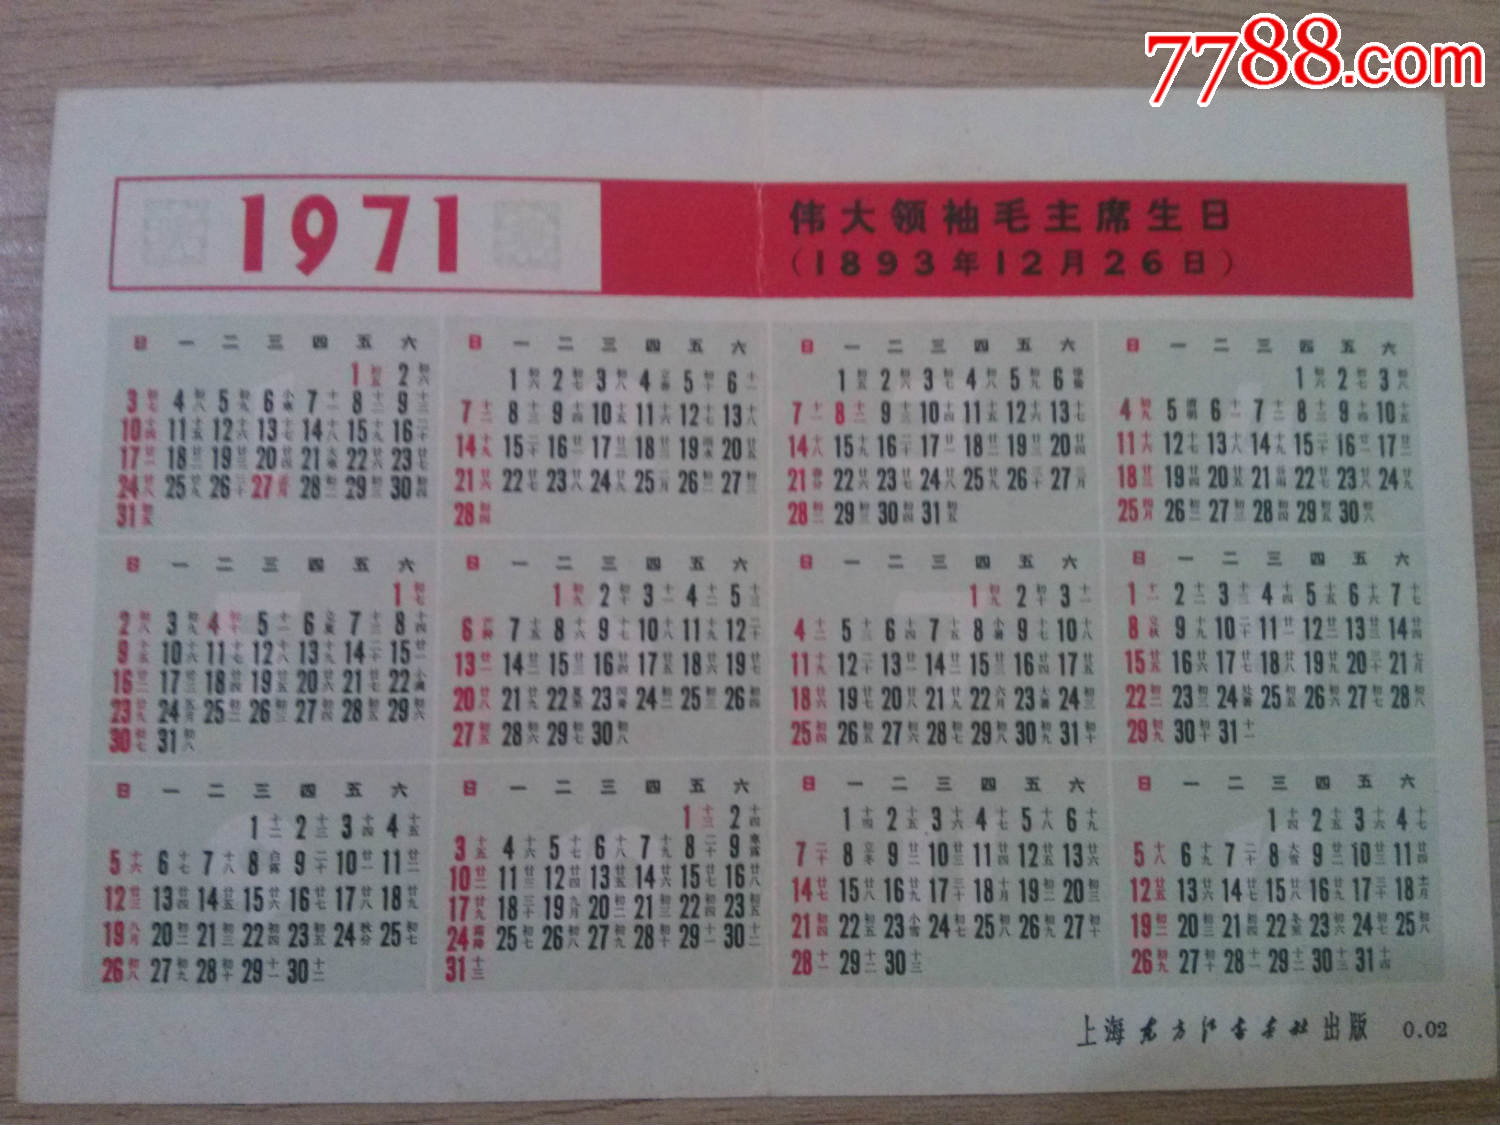 1971年上海东方红书画社沙家浜年历片-价格:2